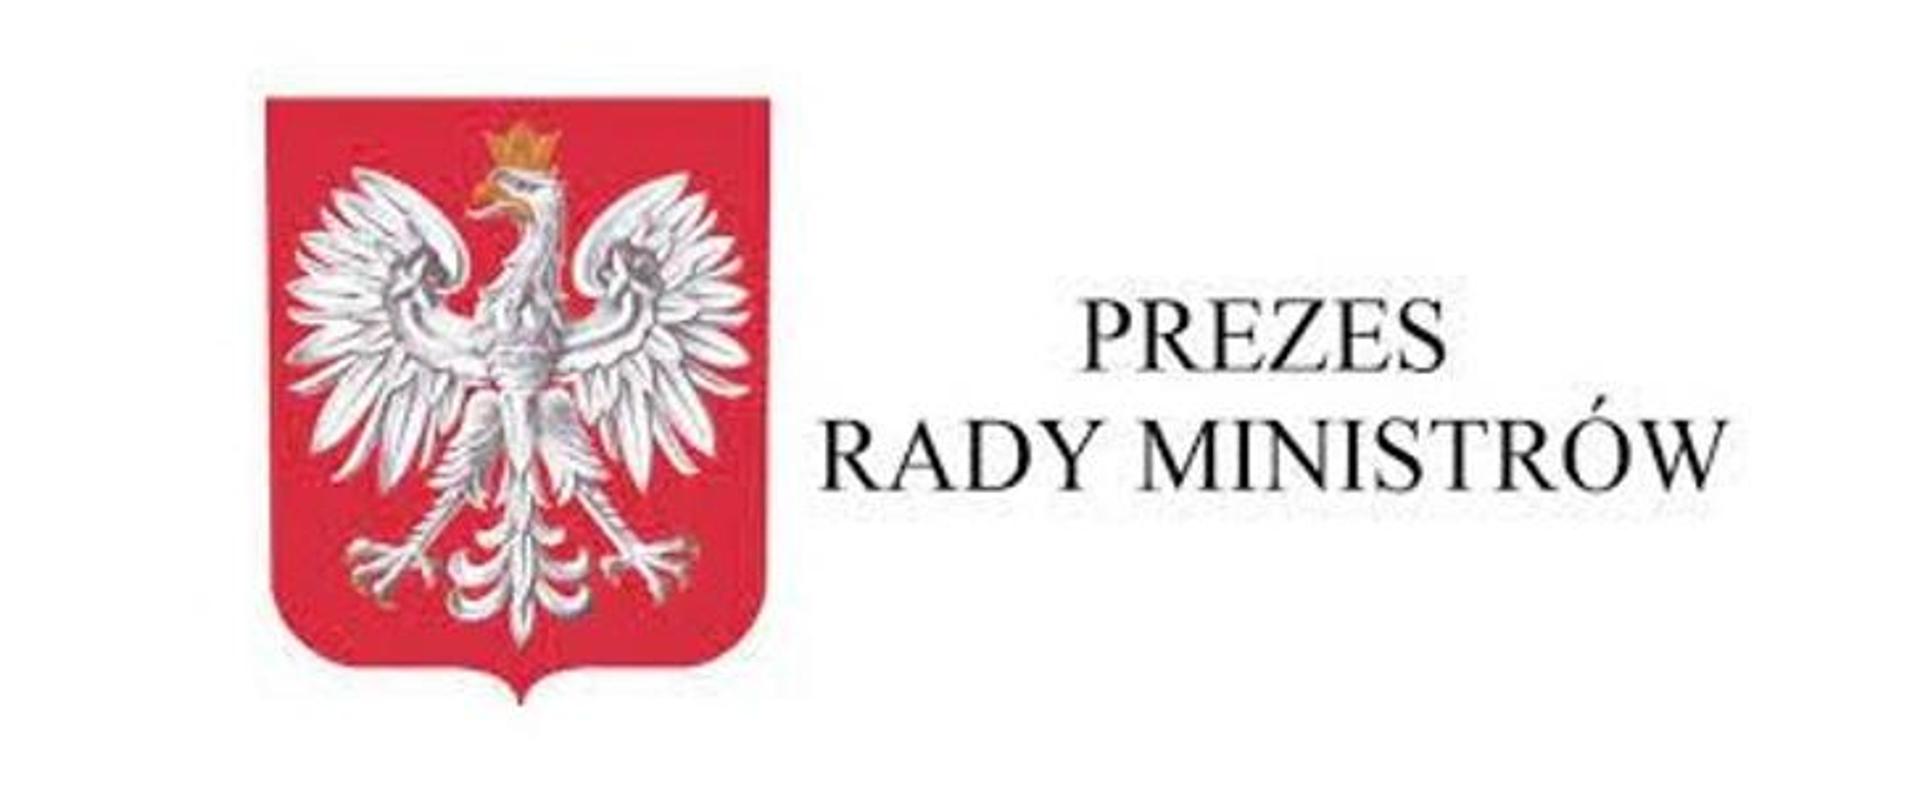 Zdjęcie przedstawia logo Prezesa Rady Ministrów